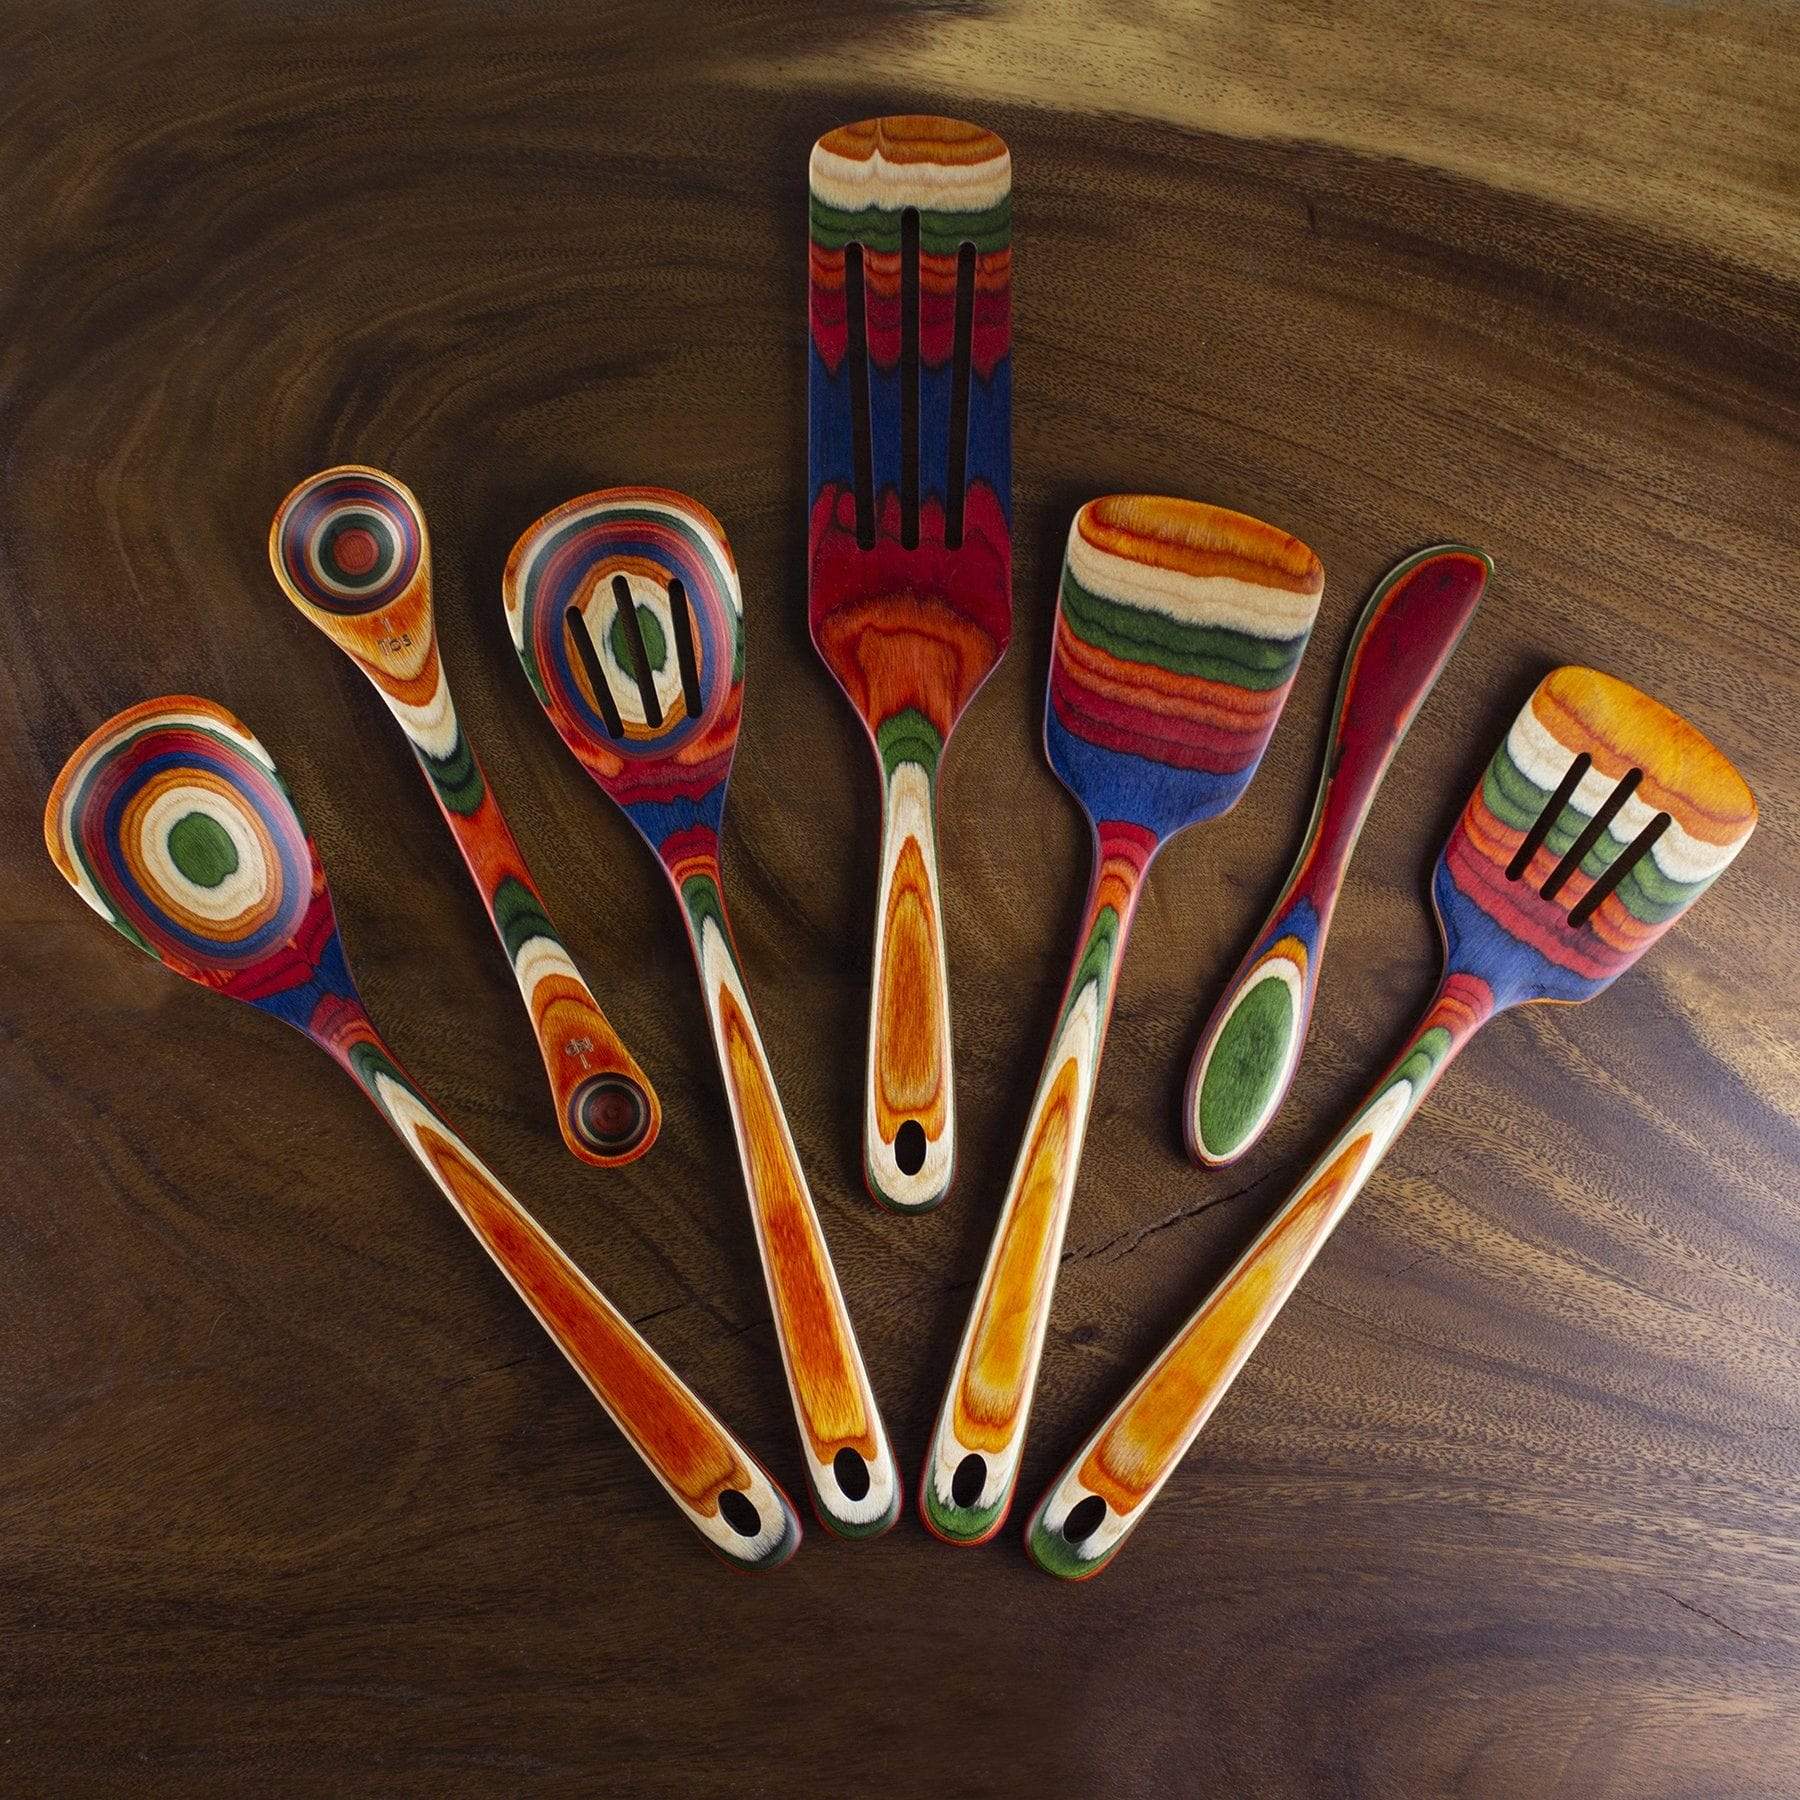 https://totallybamboo.com/cdn/shop/products/baltiquer-marrakesh-collection-2-in-1-measuring-spoon-totally-bamboo-115100.jpg?v=1651609511